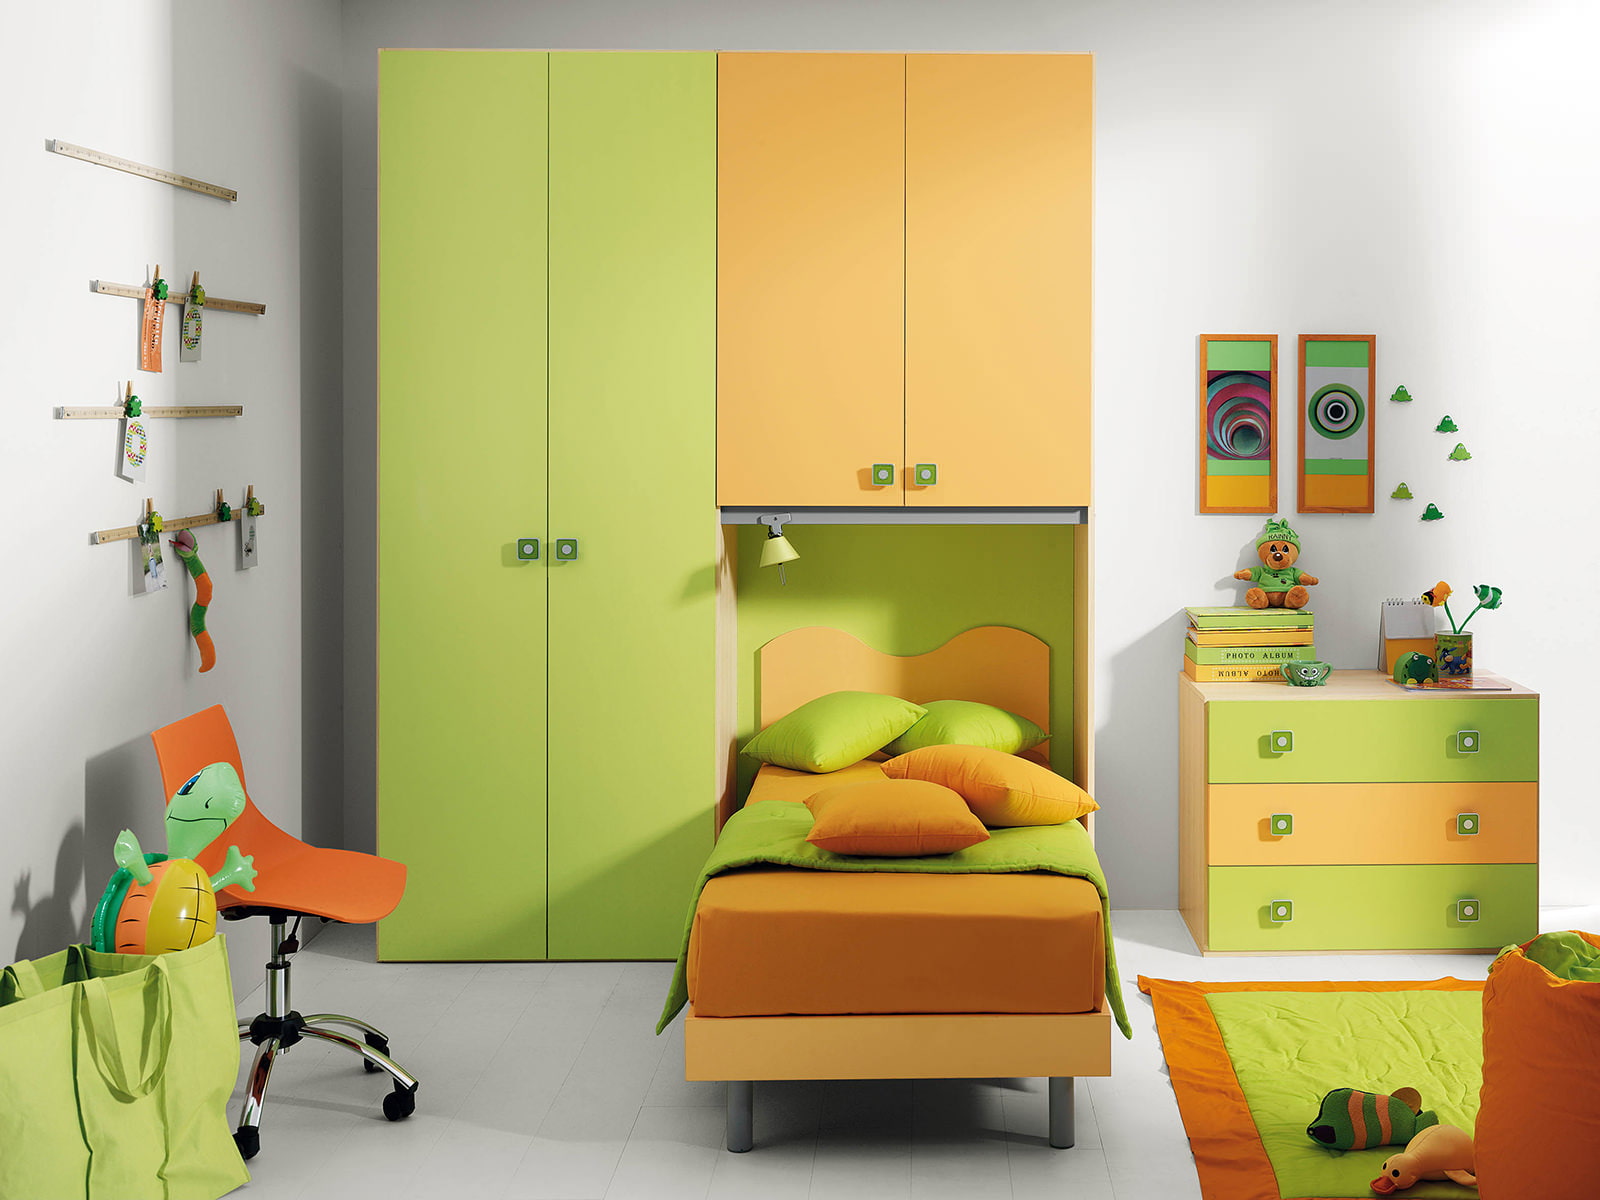 Children's room in green tones